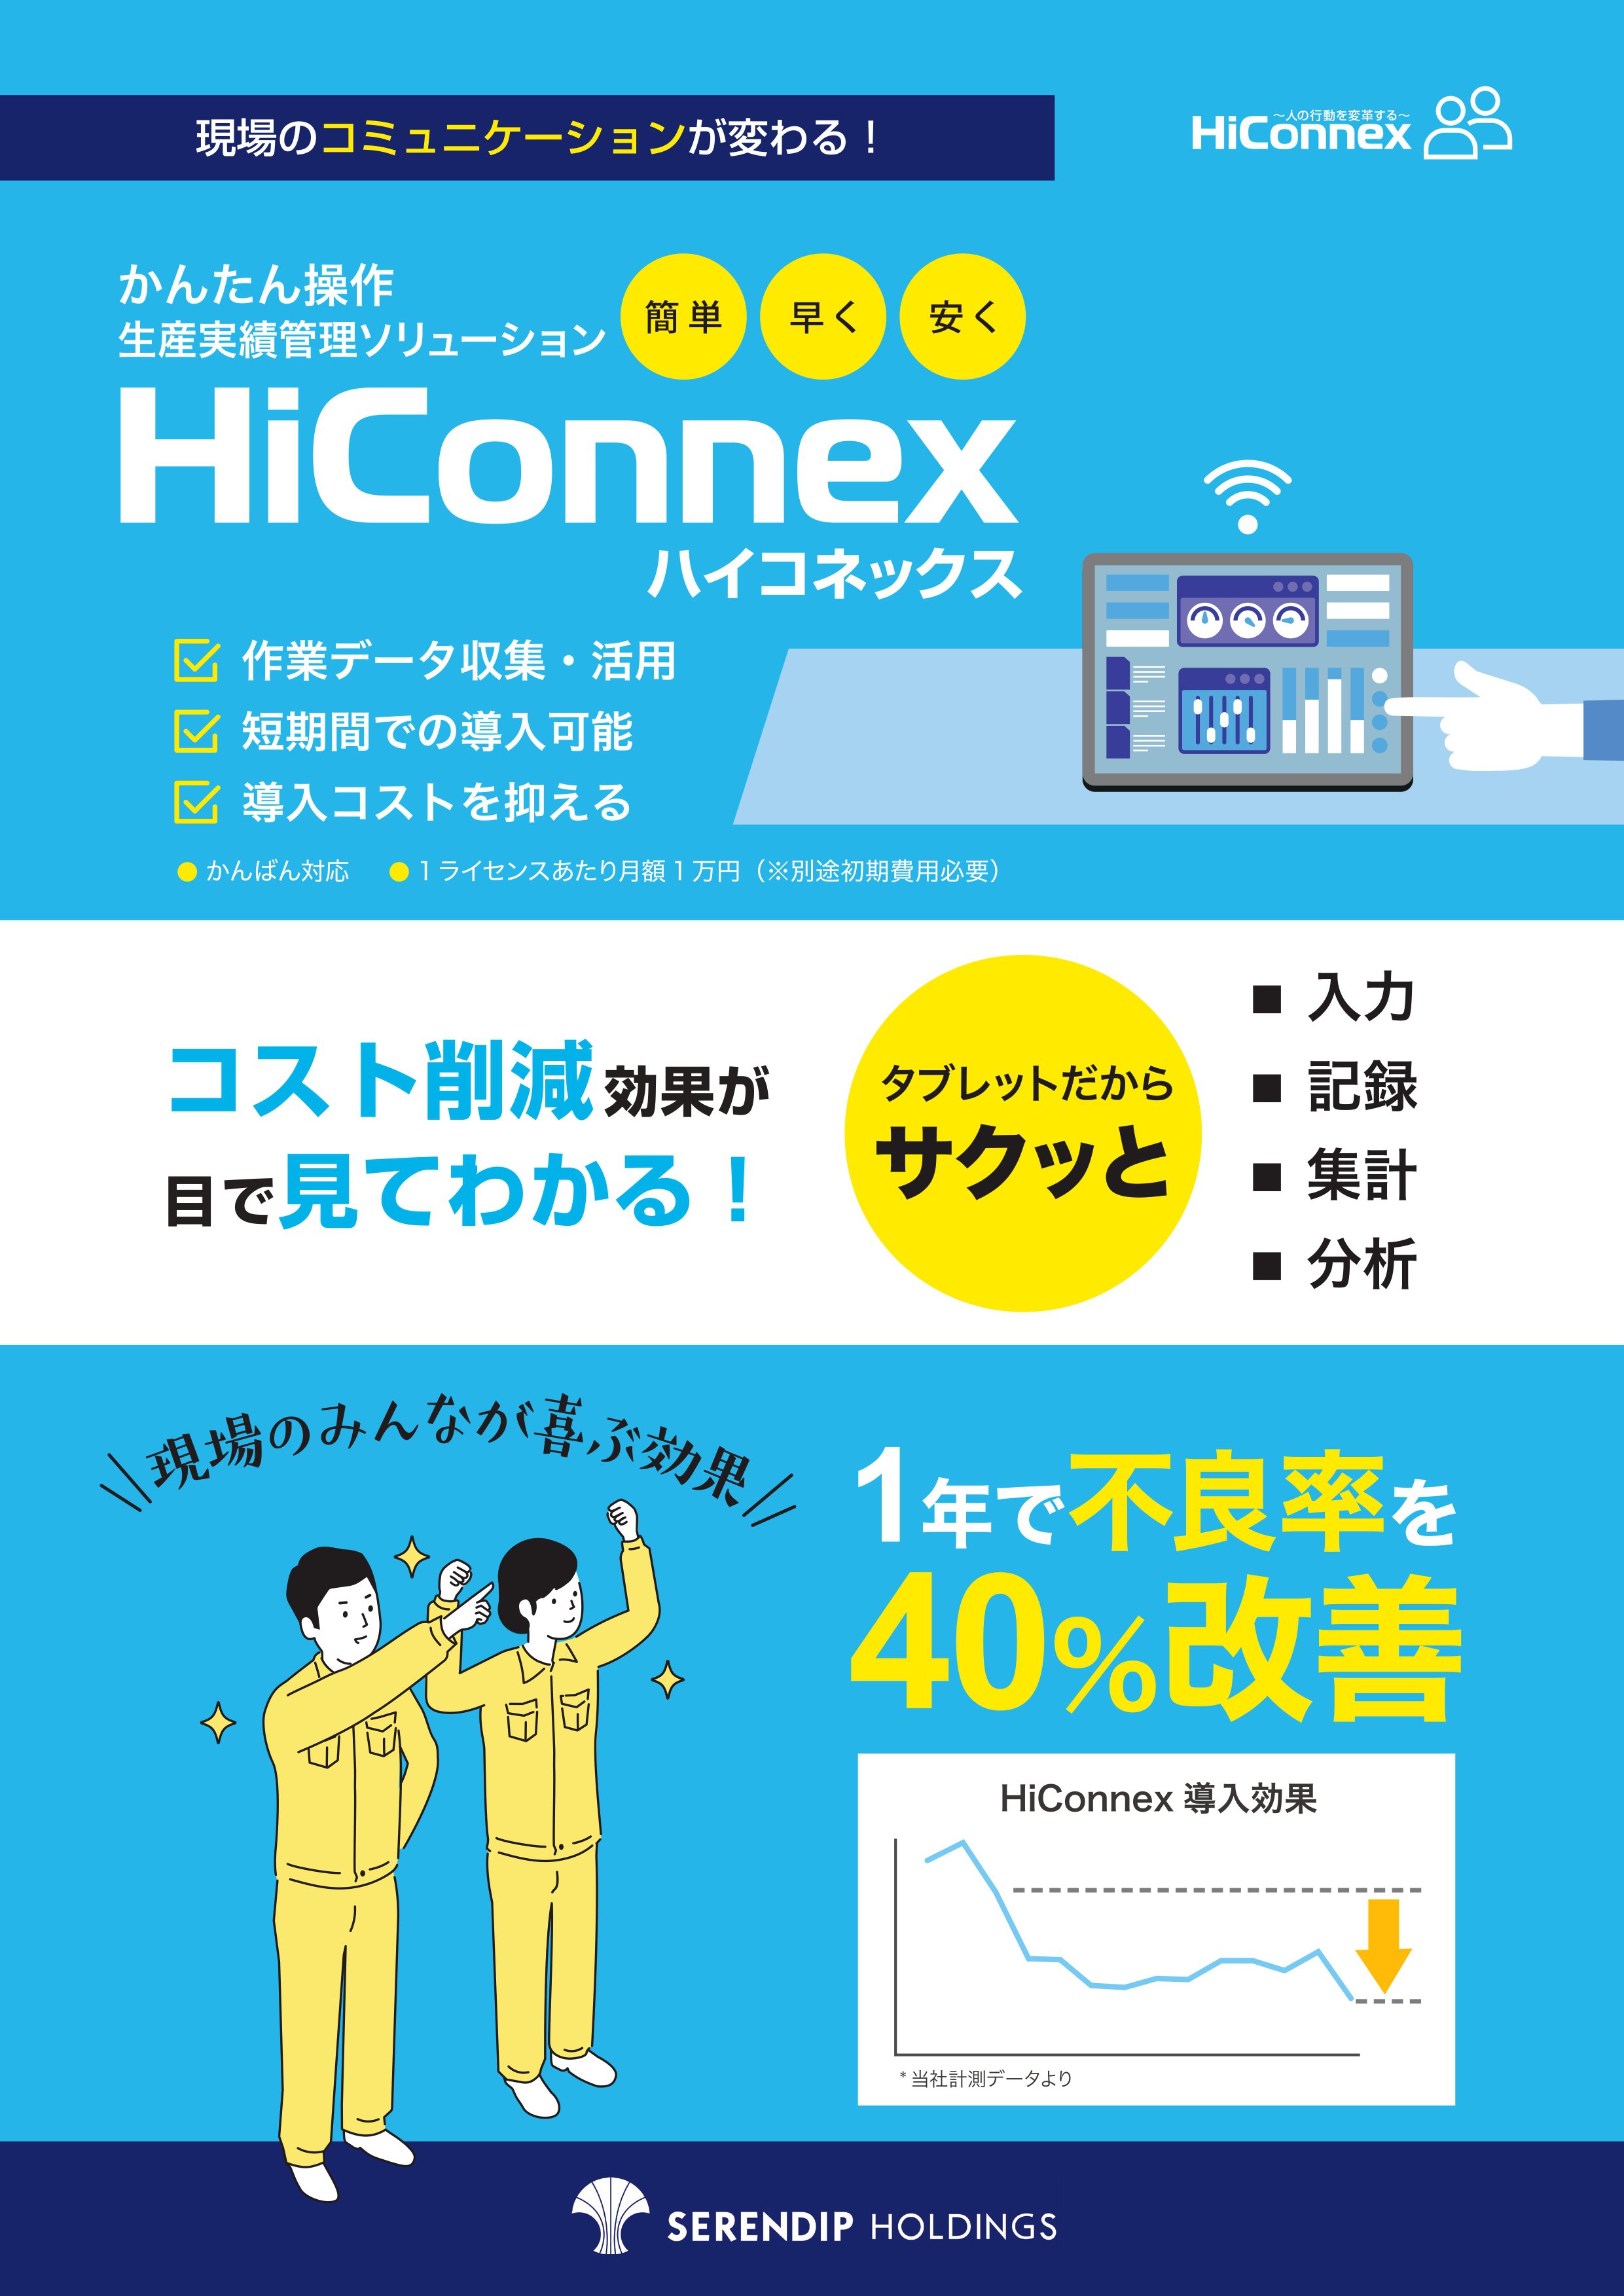 HiConnex_01.jpg